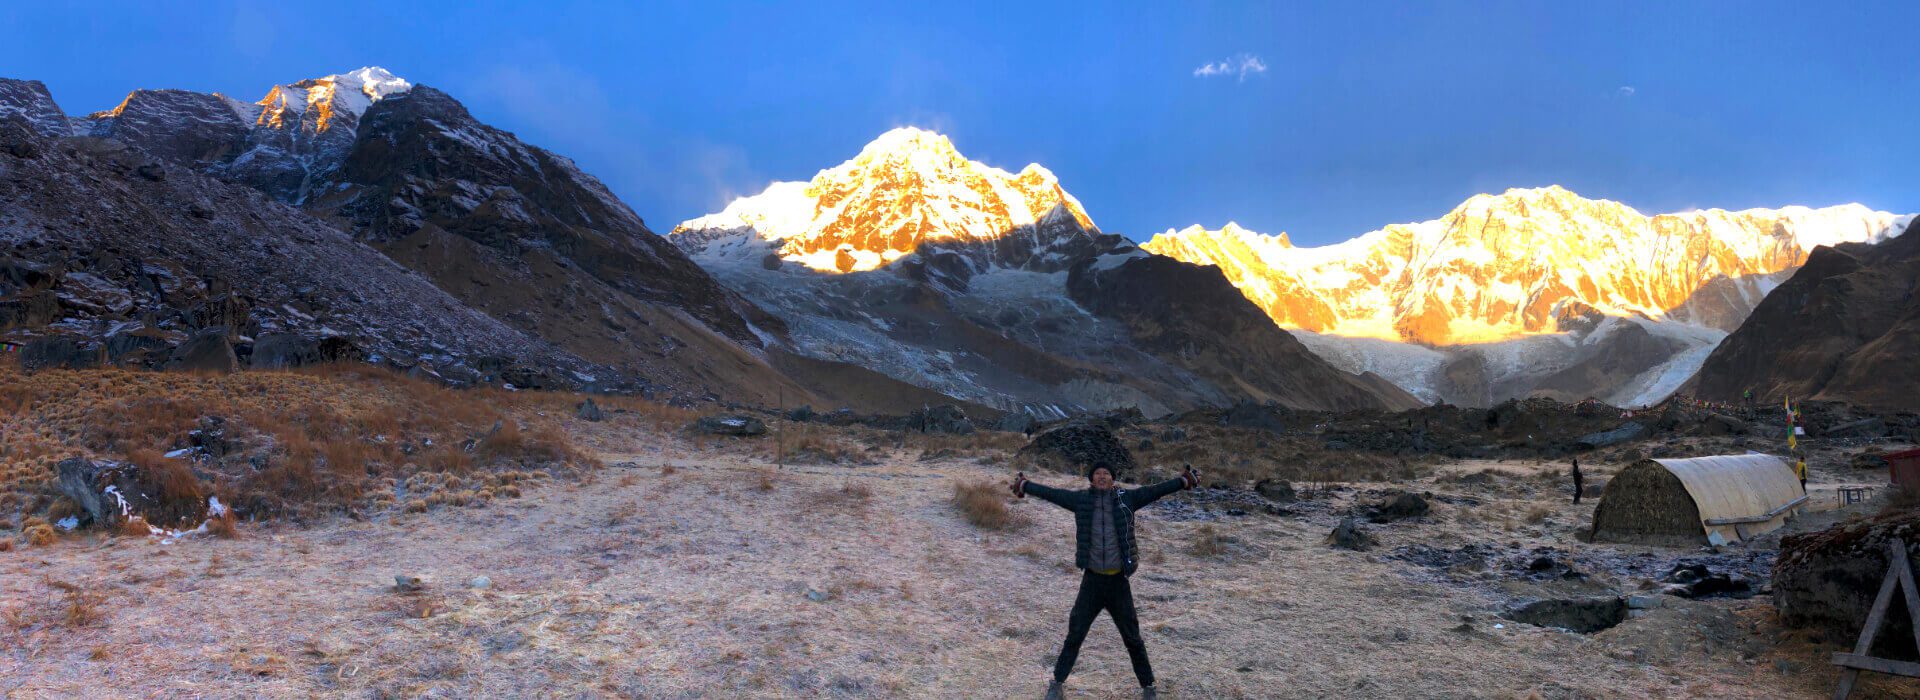 Annapurna Base Camp Trek – 14 days